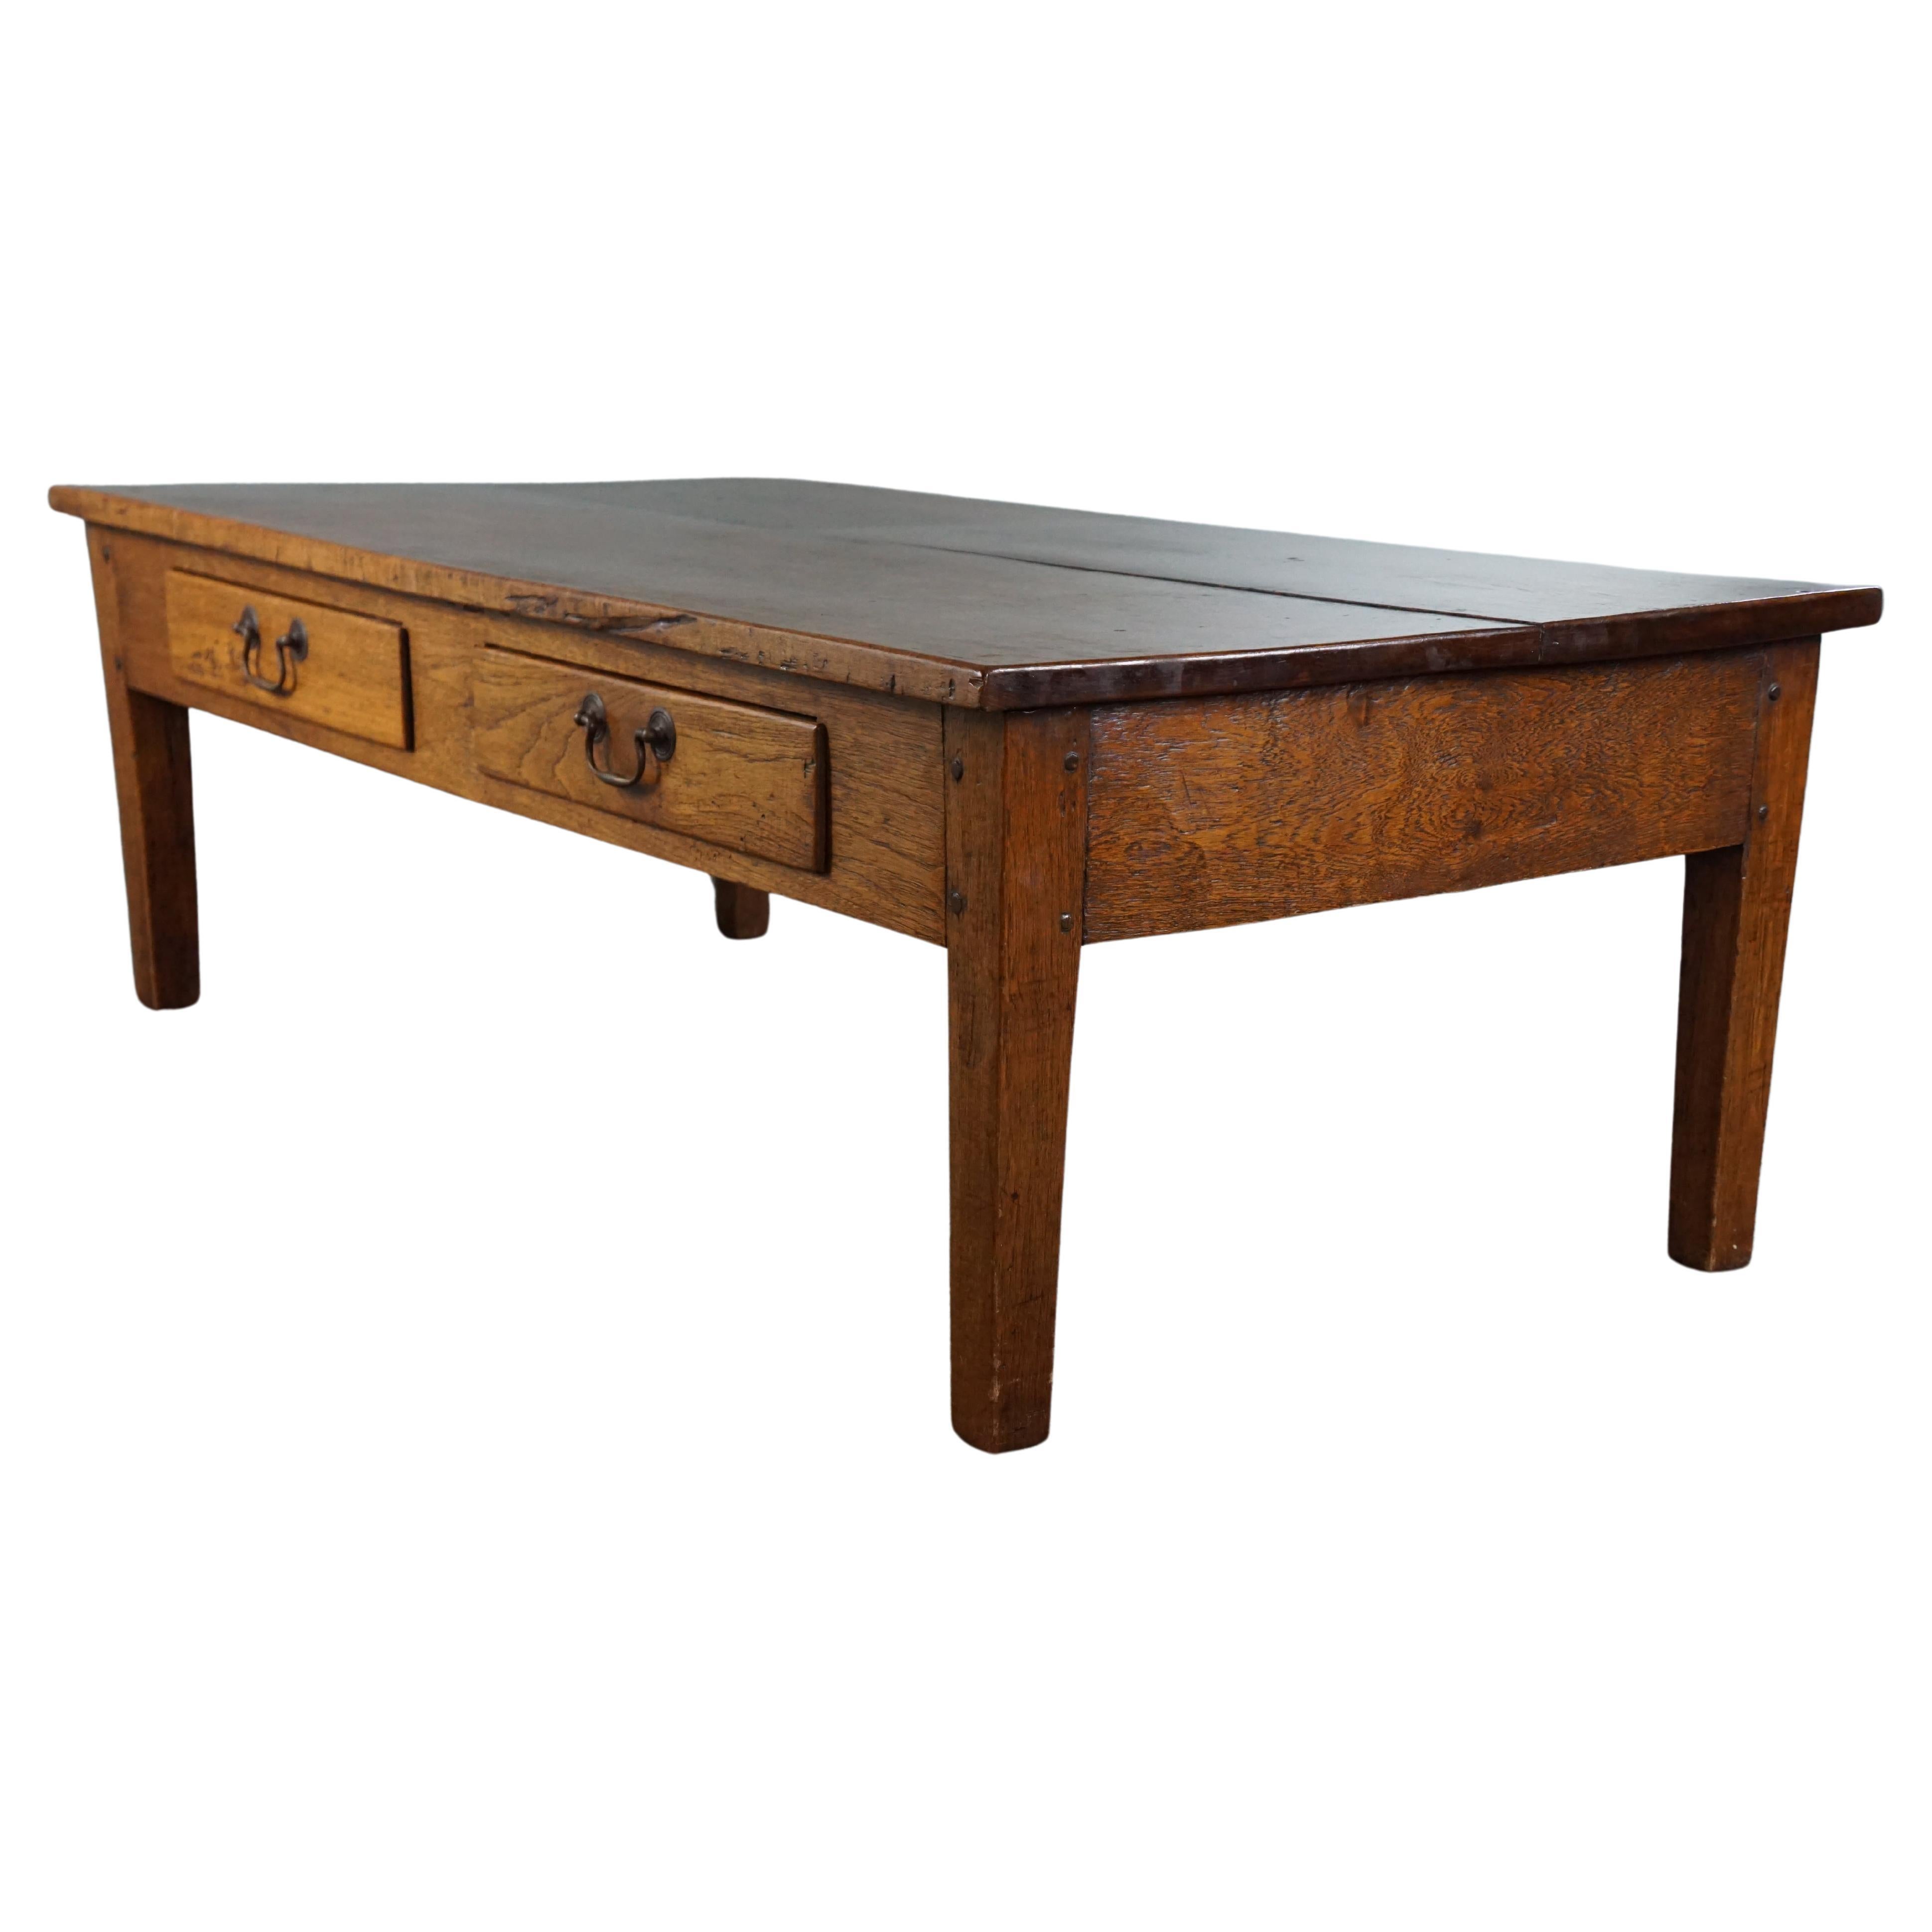 Charmante et pratique table basse ancienne avec deux tiroirs, belle couleur